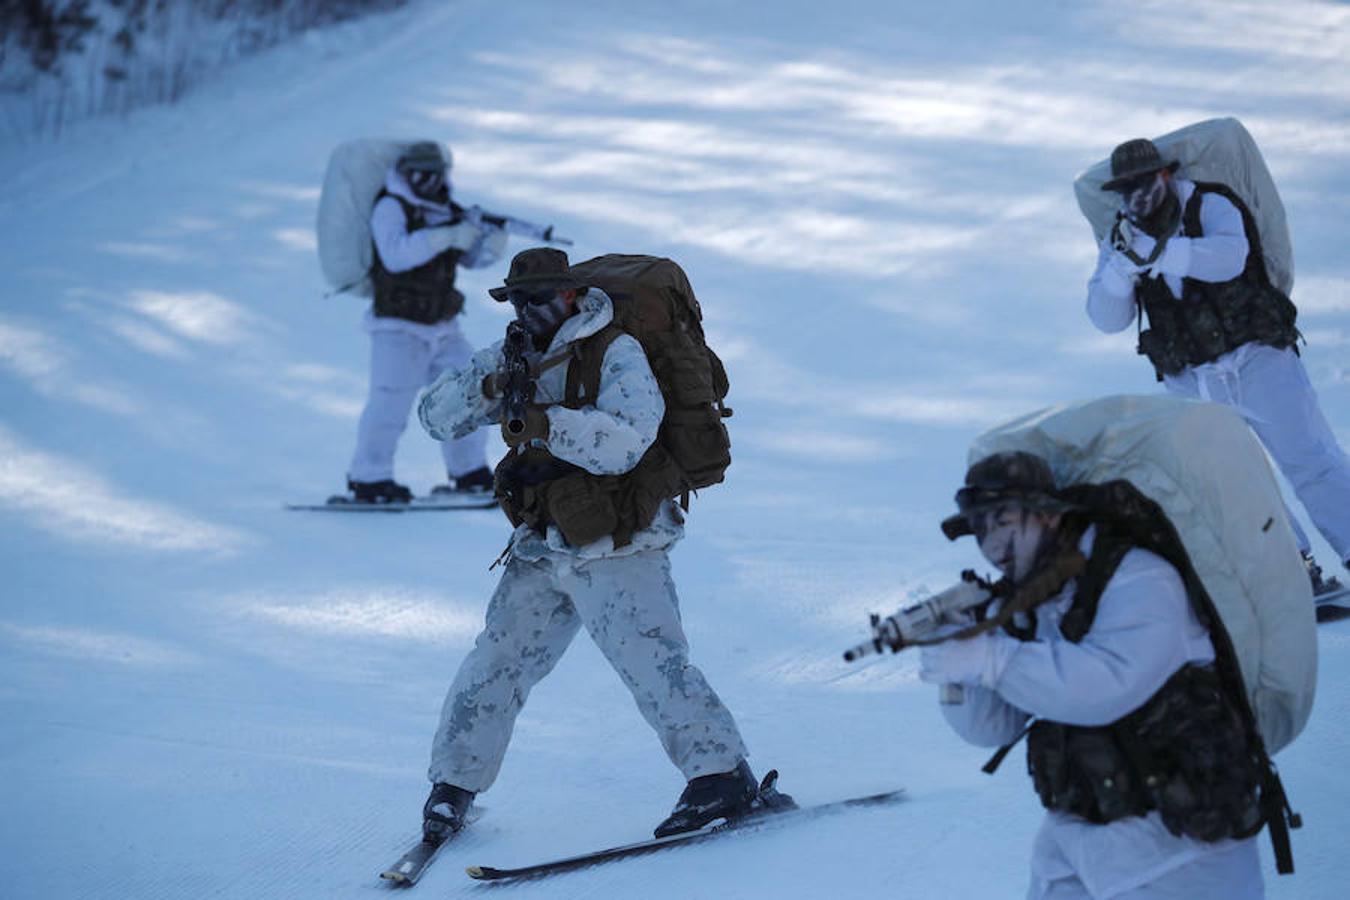 Los marines de Corea del Sur y de Estados Unidos realizan un duro entrenamiento militar de invierno en Corea del Sur. El entrenamiento, que pone a prueba el límite de los marines en situaciones extremas, comenzó el 4 de diciembre y finalizará el 22 del mismo mes.